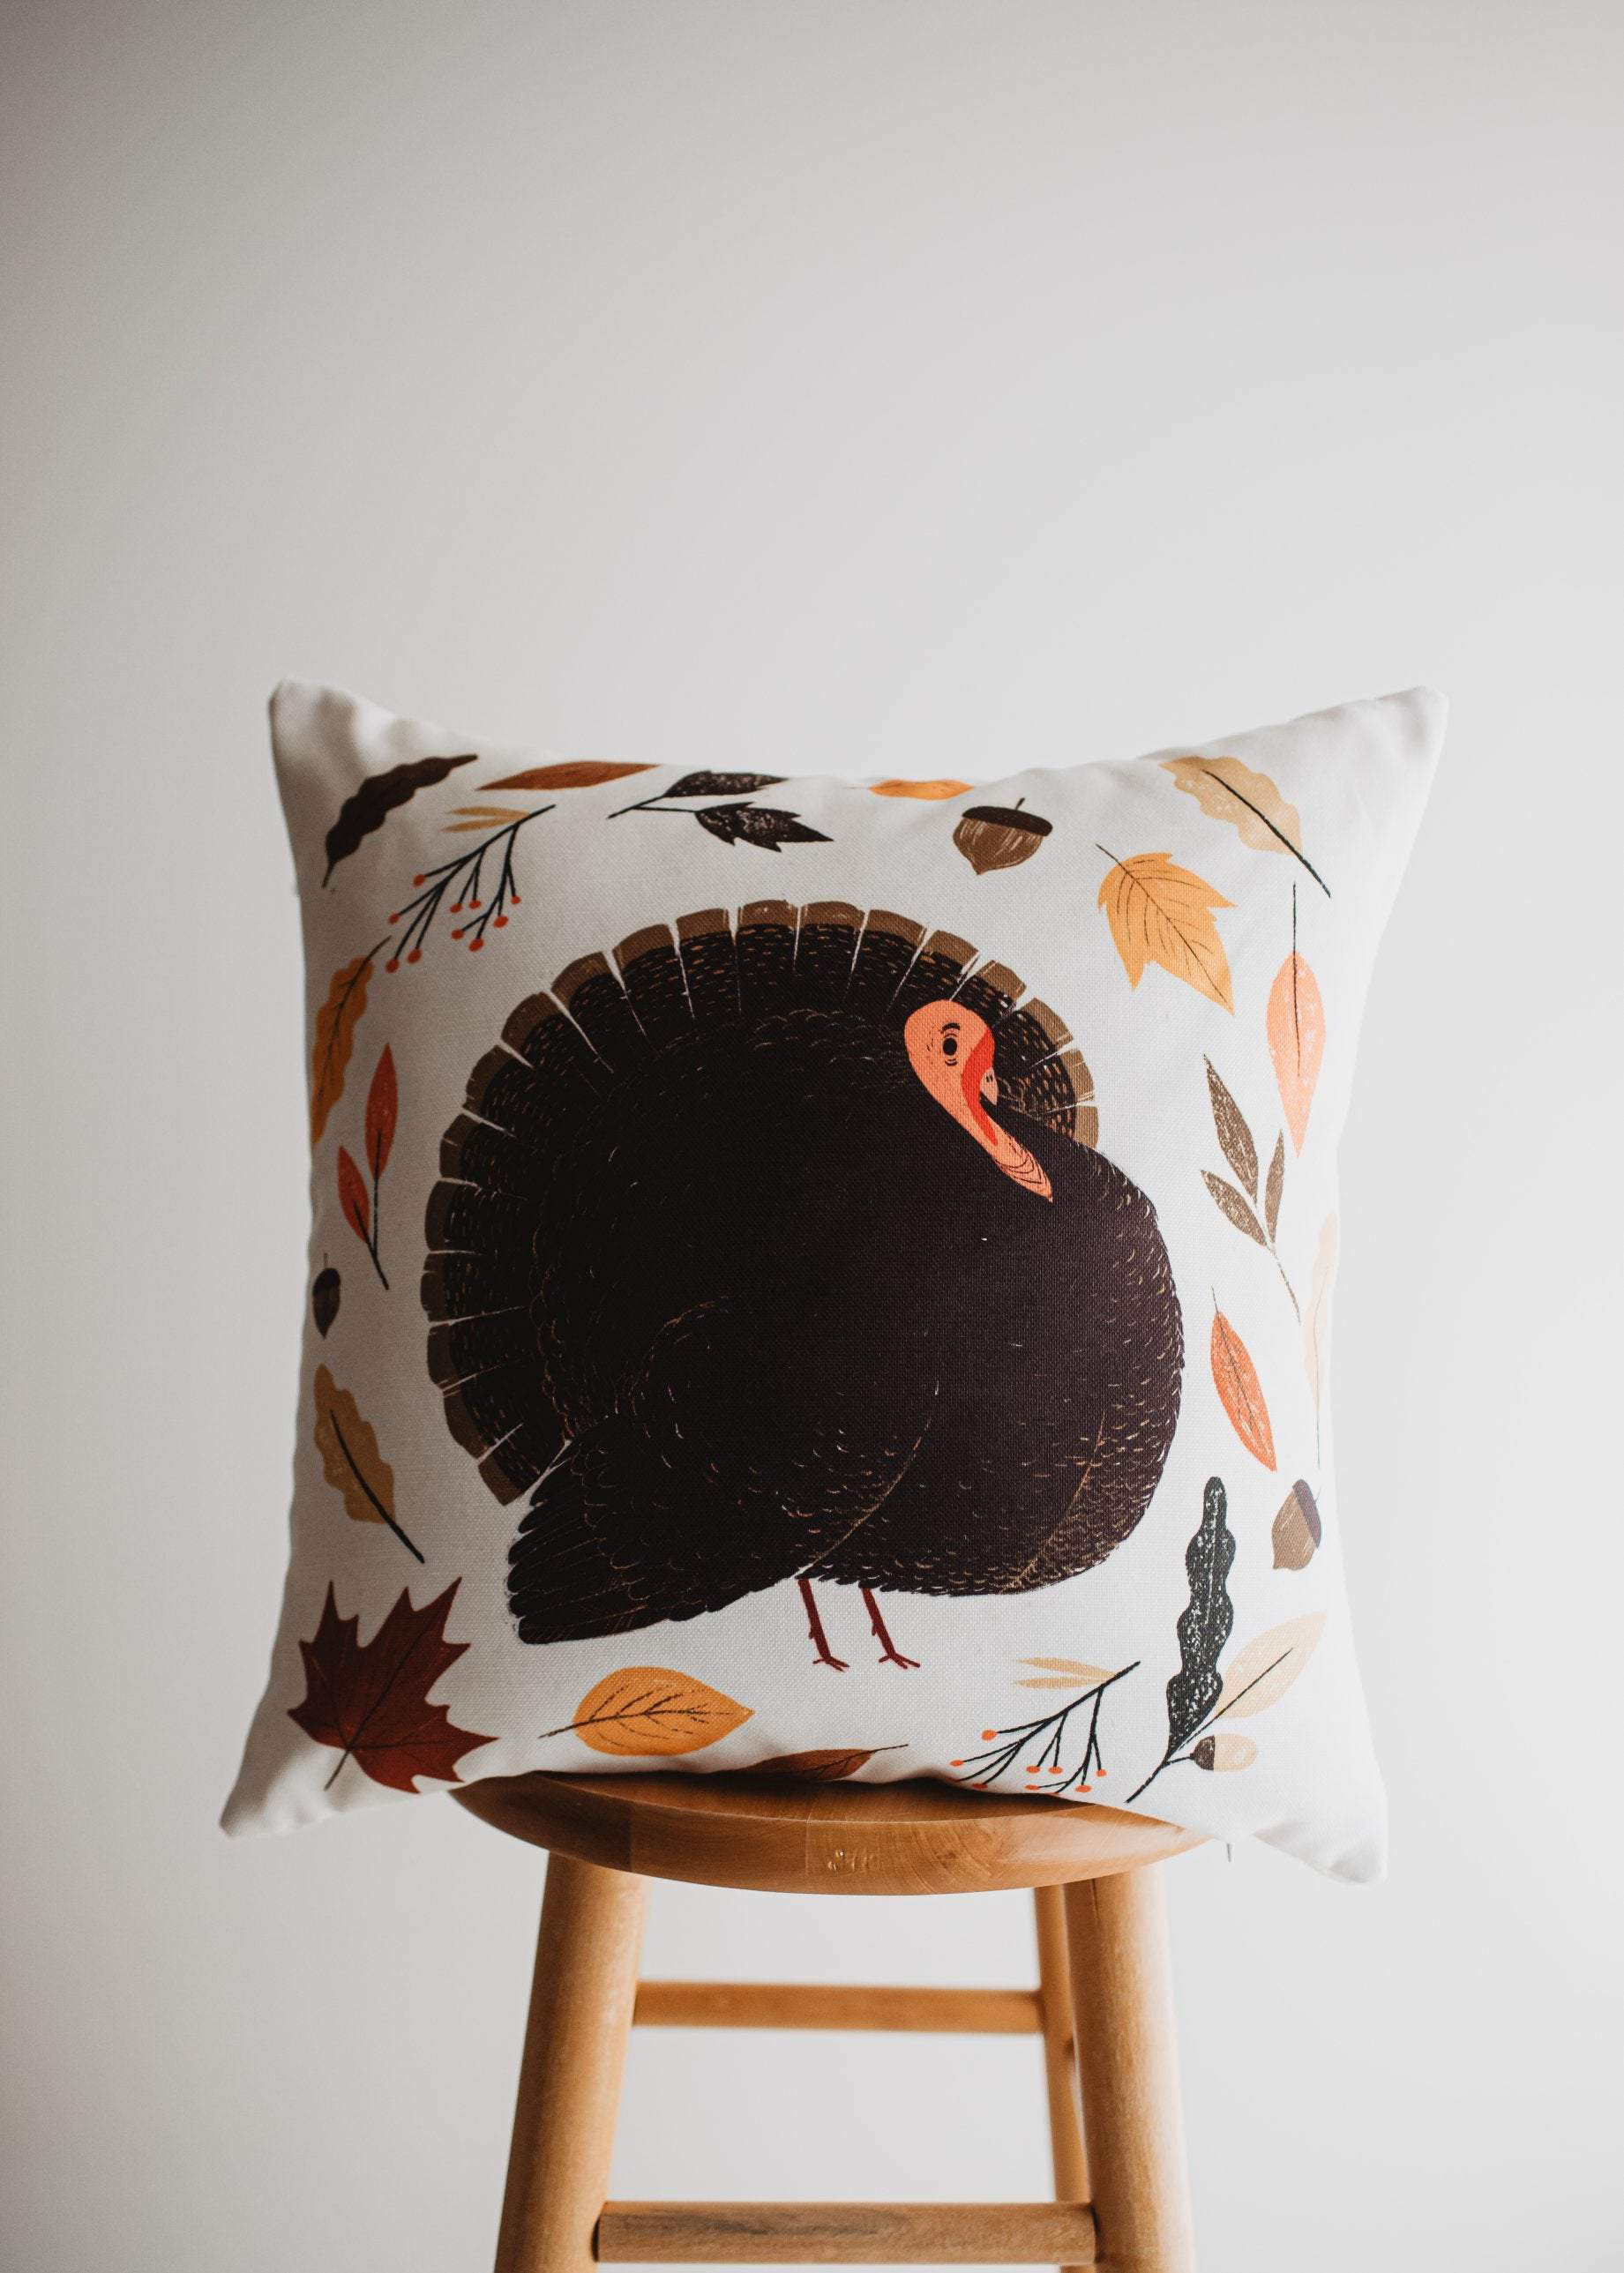 Turkey Chicken Leg Plush Toys New Throw Pillow XMAS Decor Gifts Thanksgiving Day